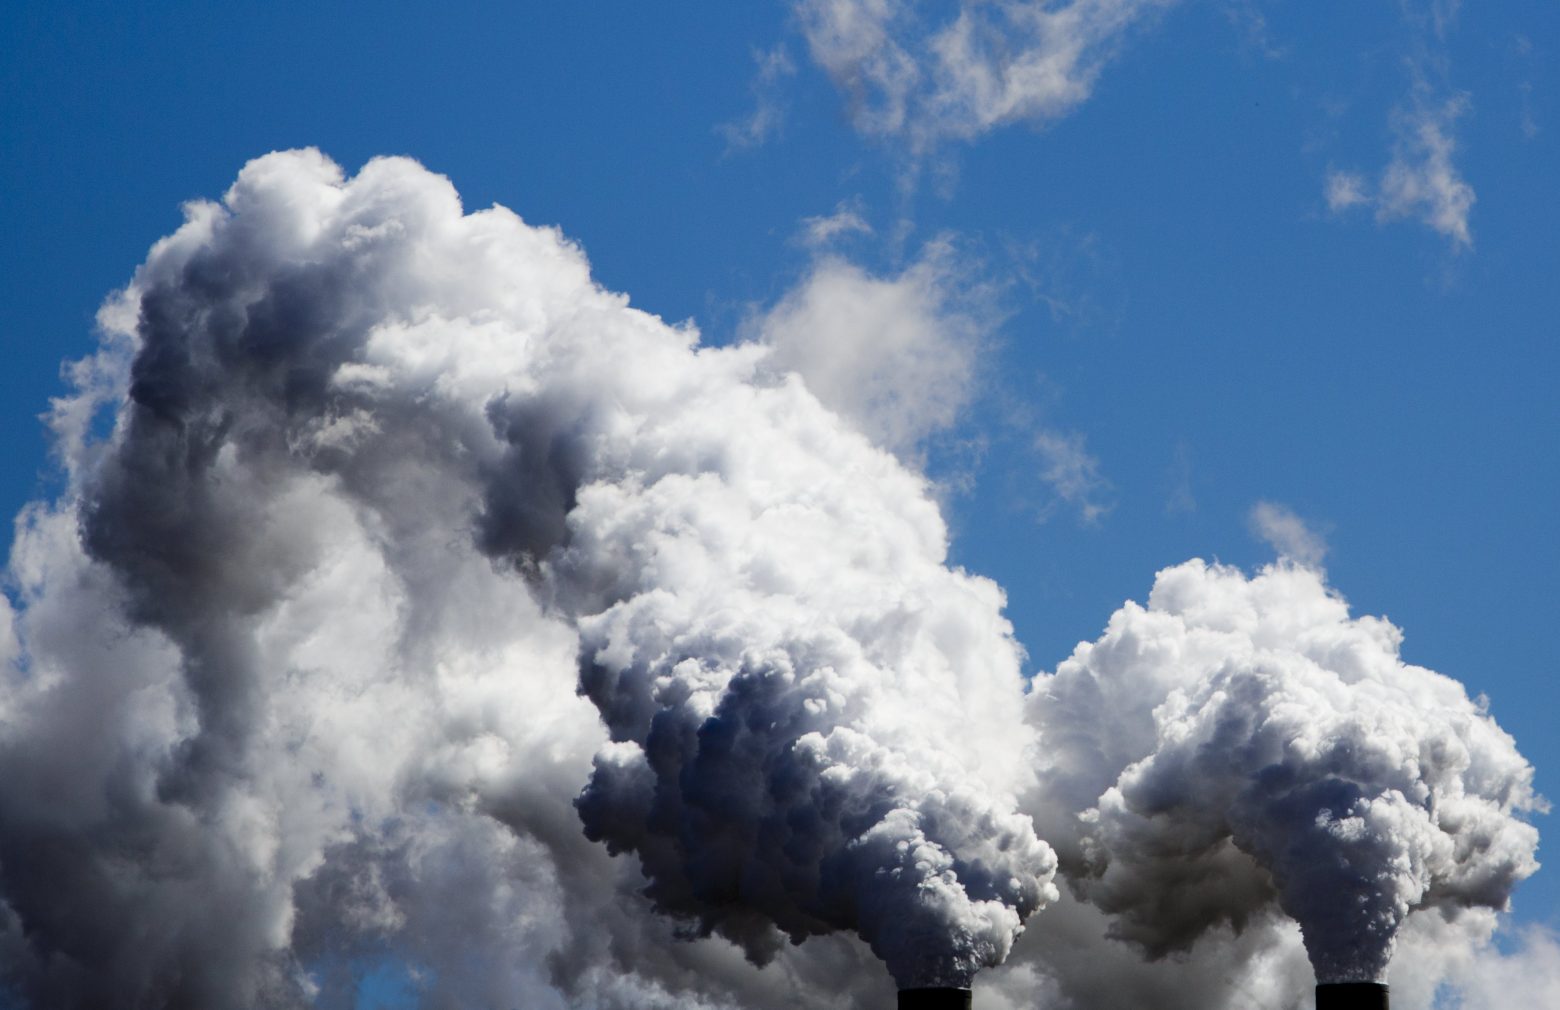 Κλιματικός νόμος: Για «δειλή αρχή» κάνουν λόγο οι περιβαλλοντικές οργανώσεις